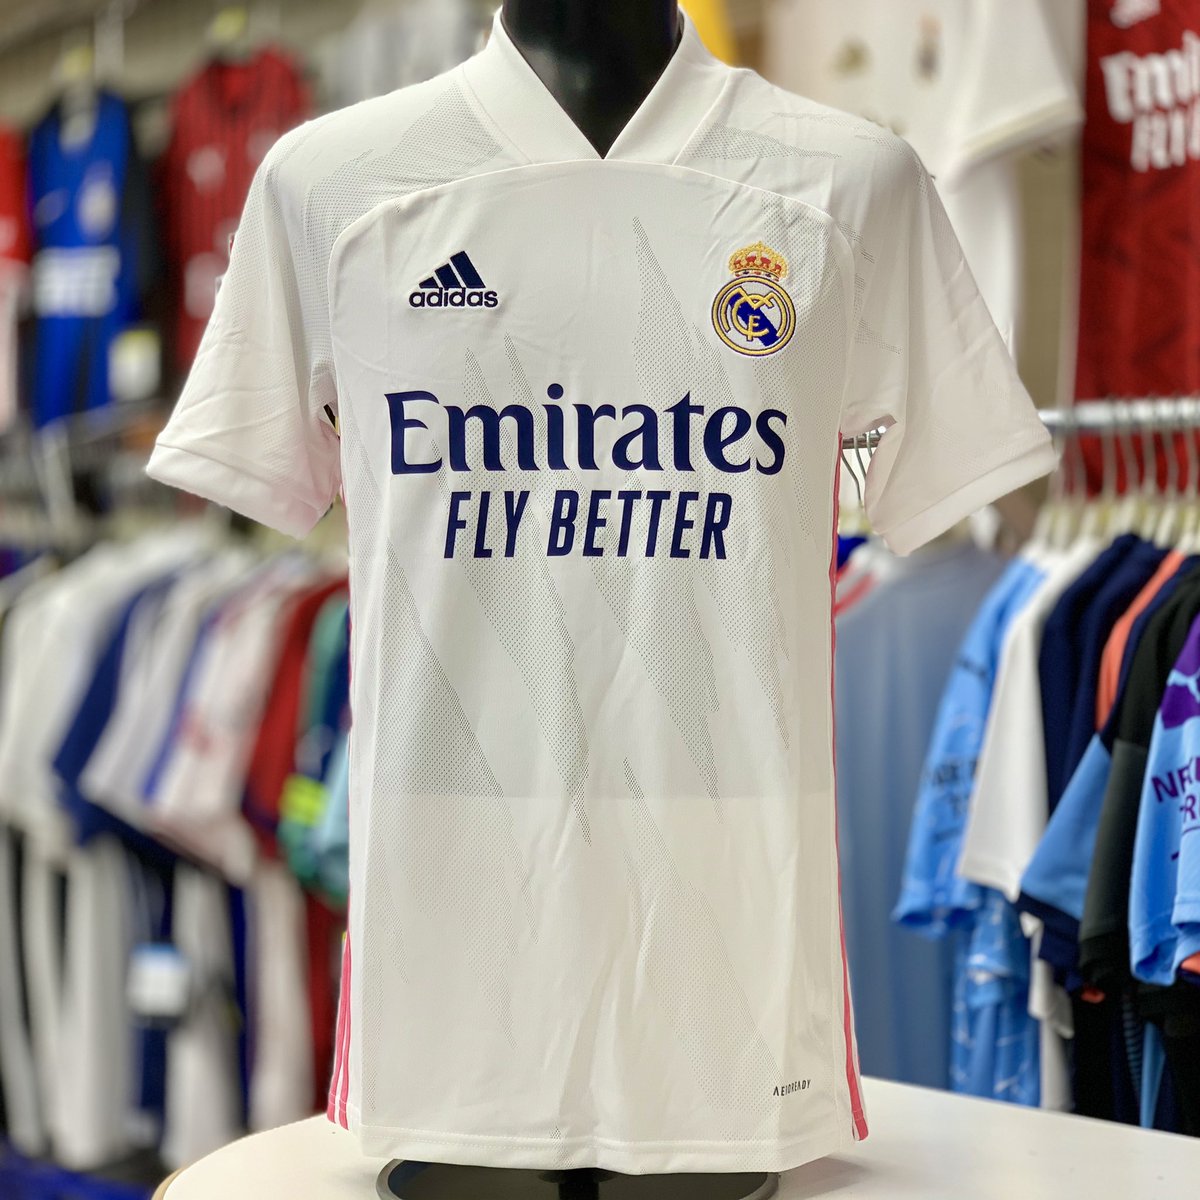 フットボールショップ パシオン 川越店 21 Real Madrid レアル マドリードの新ユニフォームが 今日から発売してます 大人 ジュニアサイズともに入荷 Adidasfootball ラ リーガ Halamadrid レアル マドリード T Co